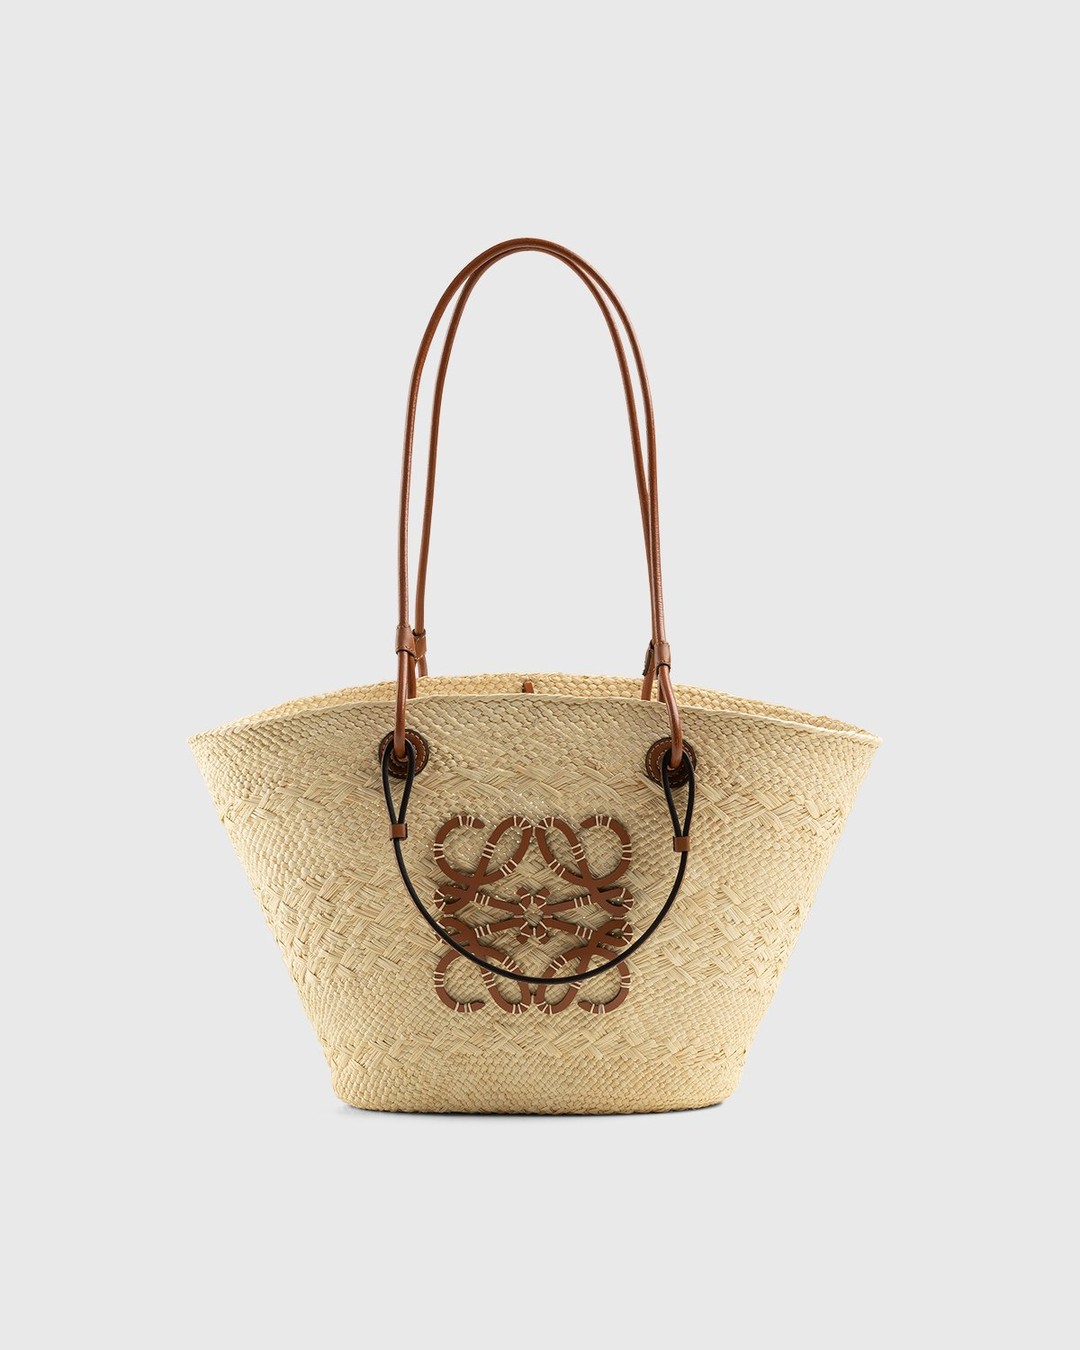 Loewe Basket Small Bag in Natural & Tan